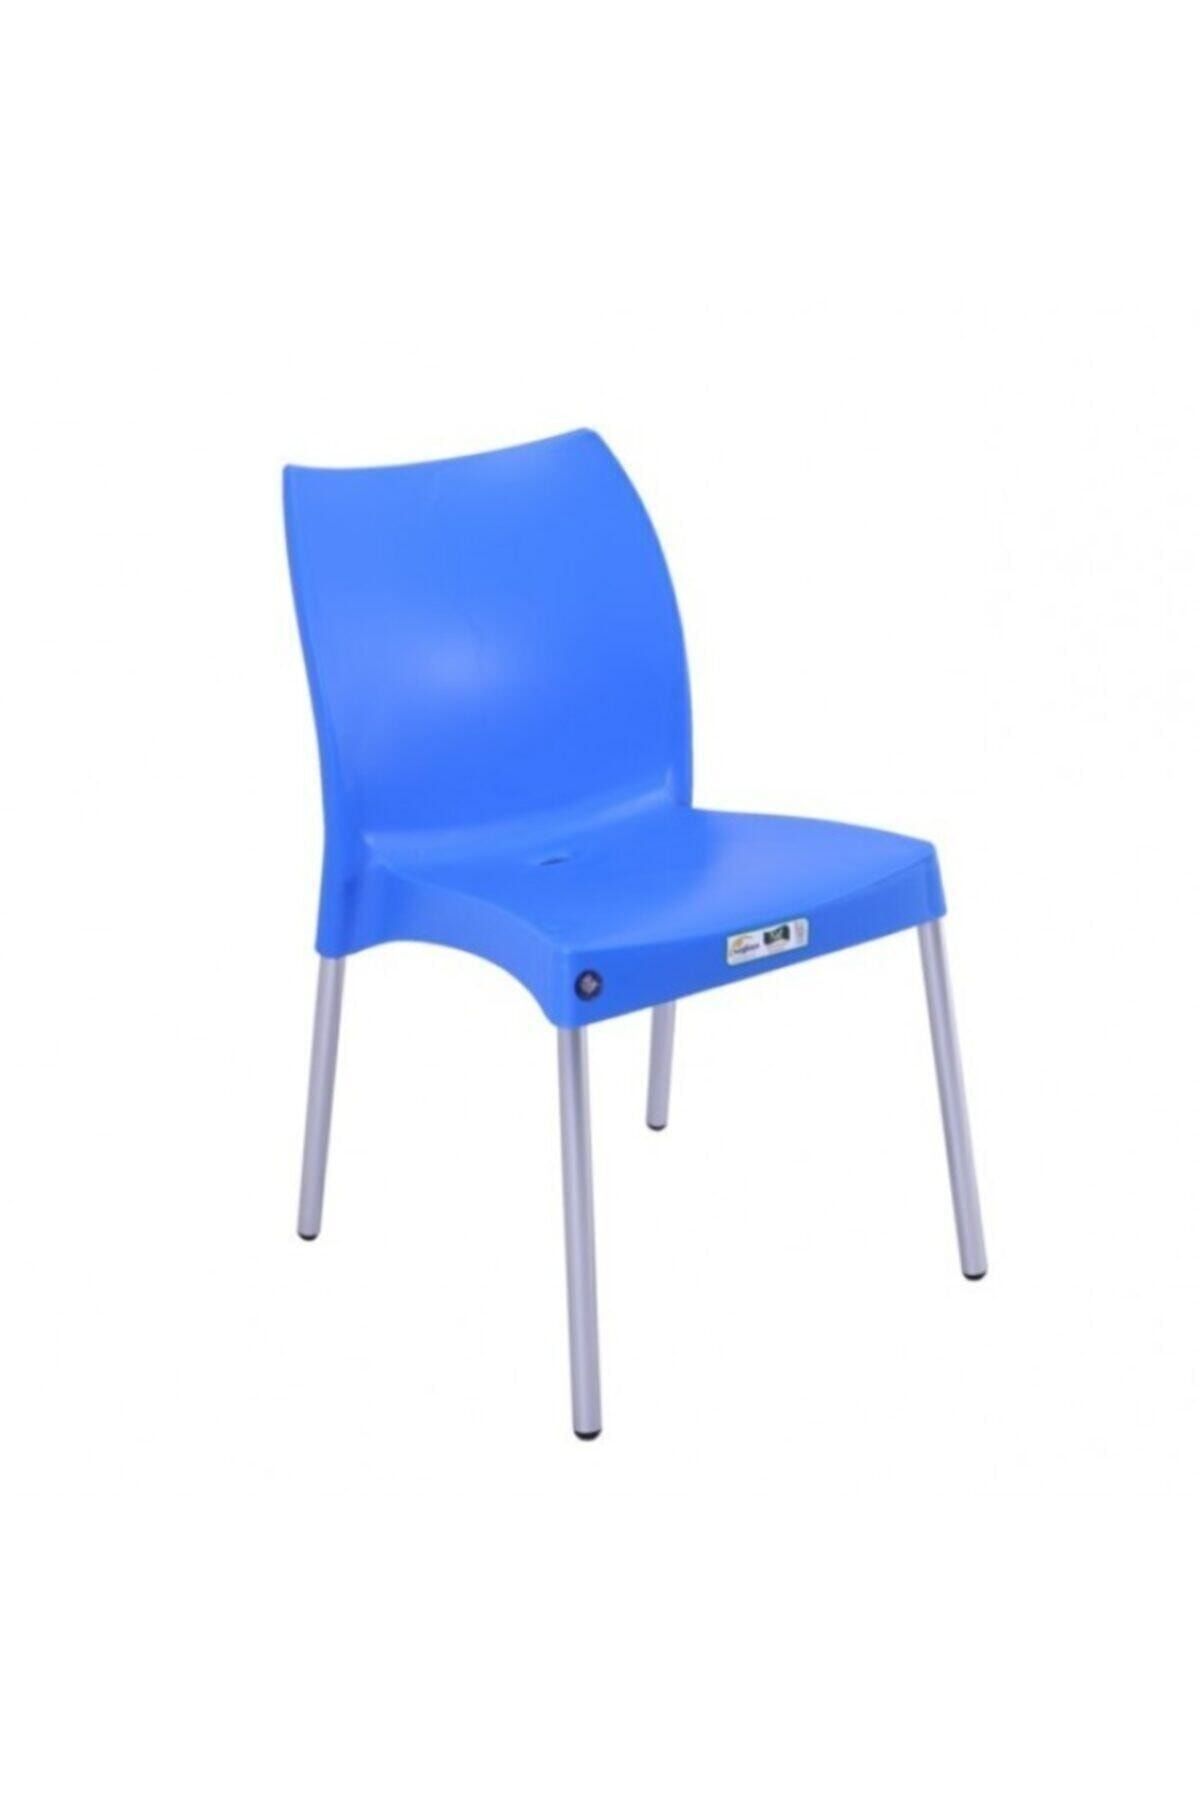 Mandella Nil Sandalye (2 ADET) Alüminyum Ayaklı Mavi